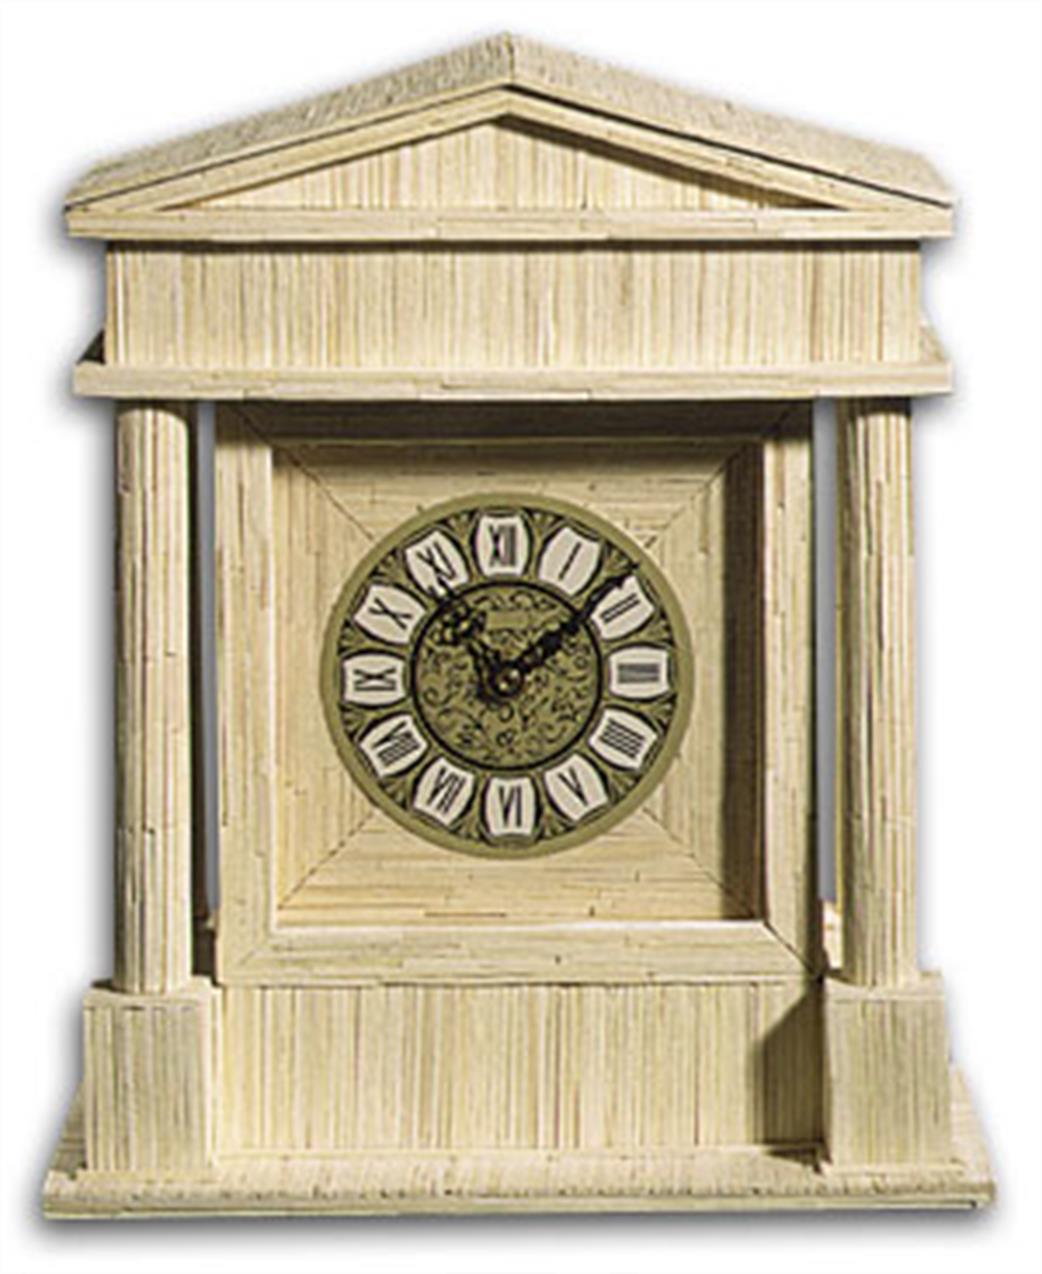 Matchcraft 11600 Colosseum Clock Matchstick Kit